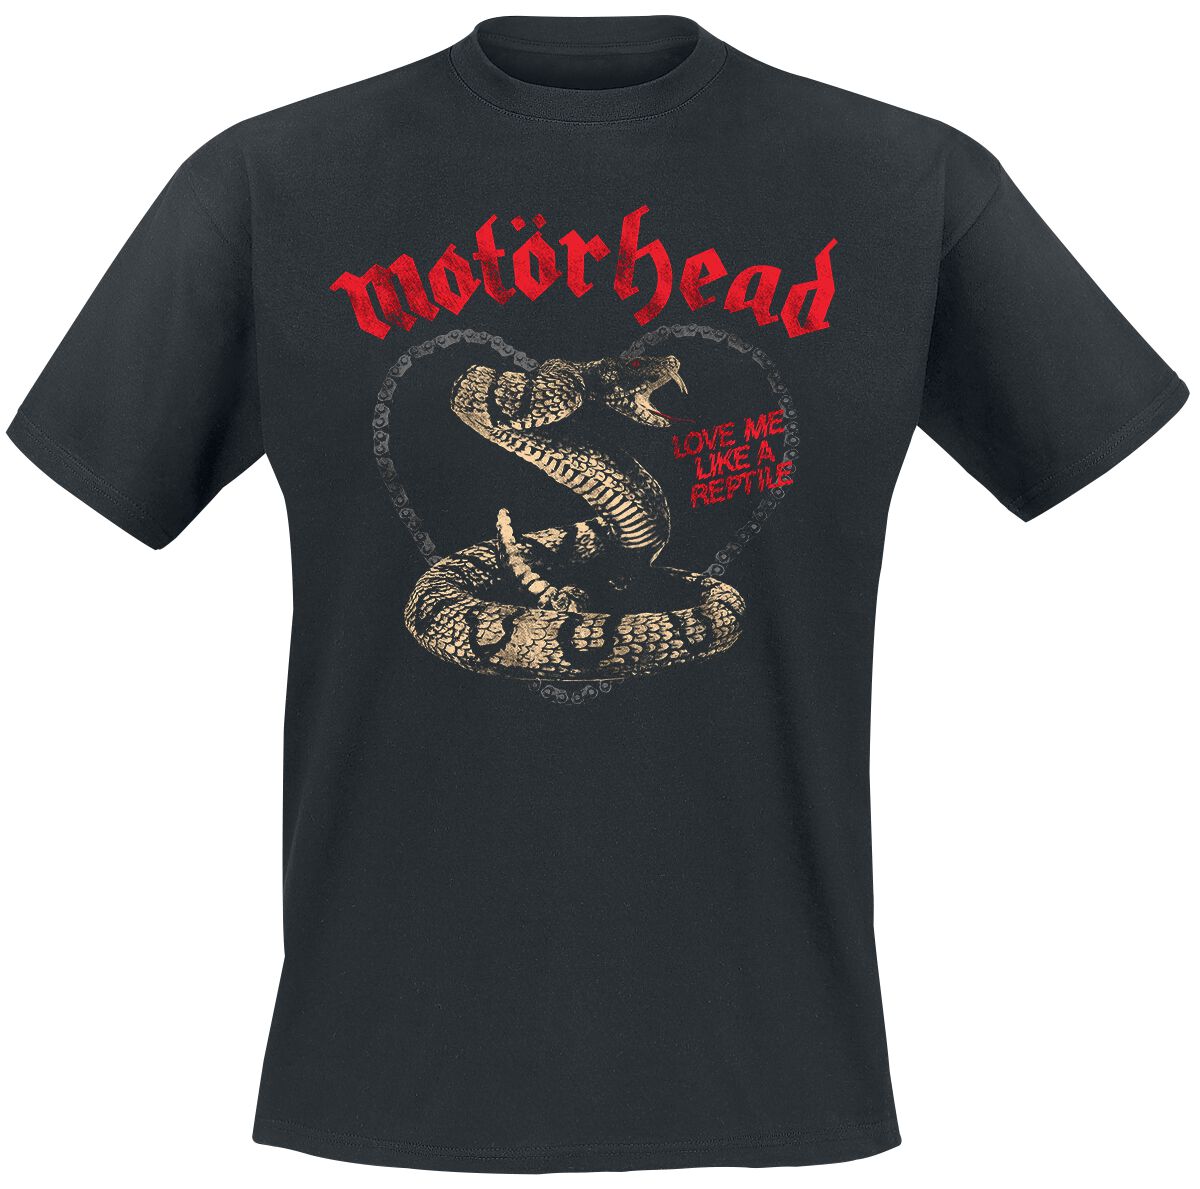 Motörhead Love Me Like A Reptile T-Shirt black